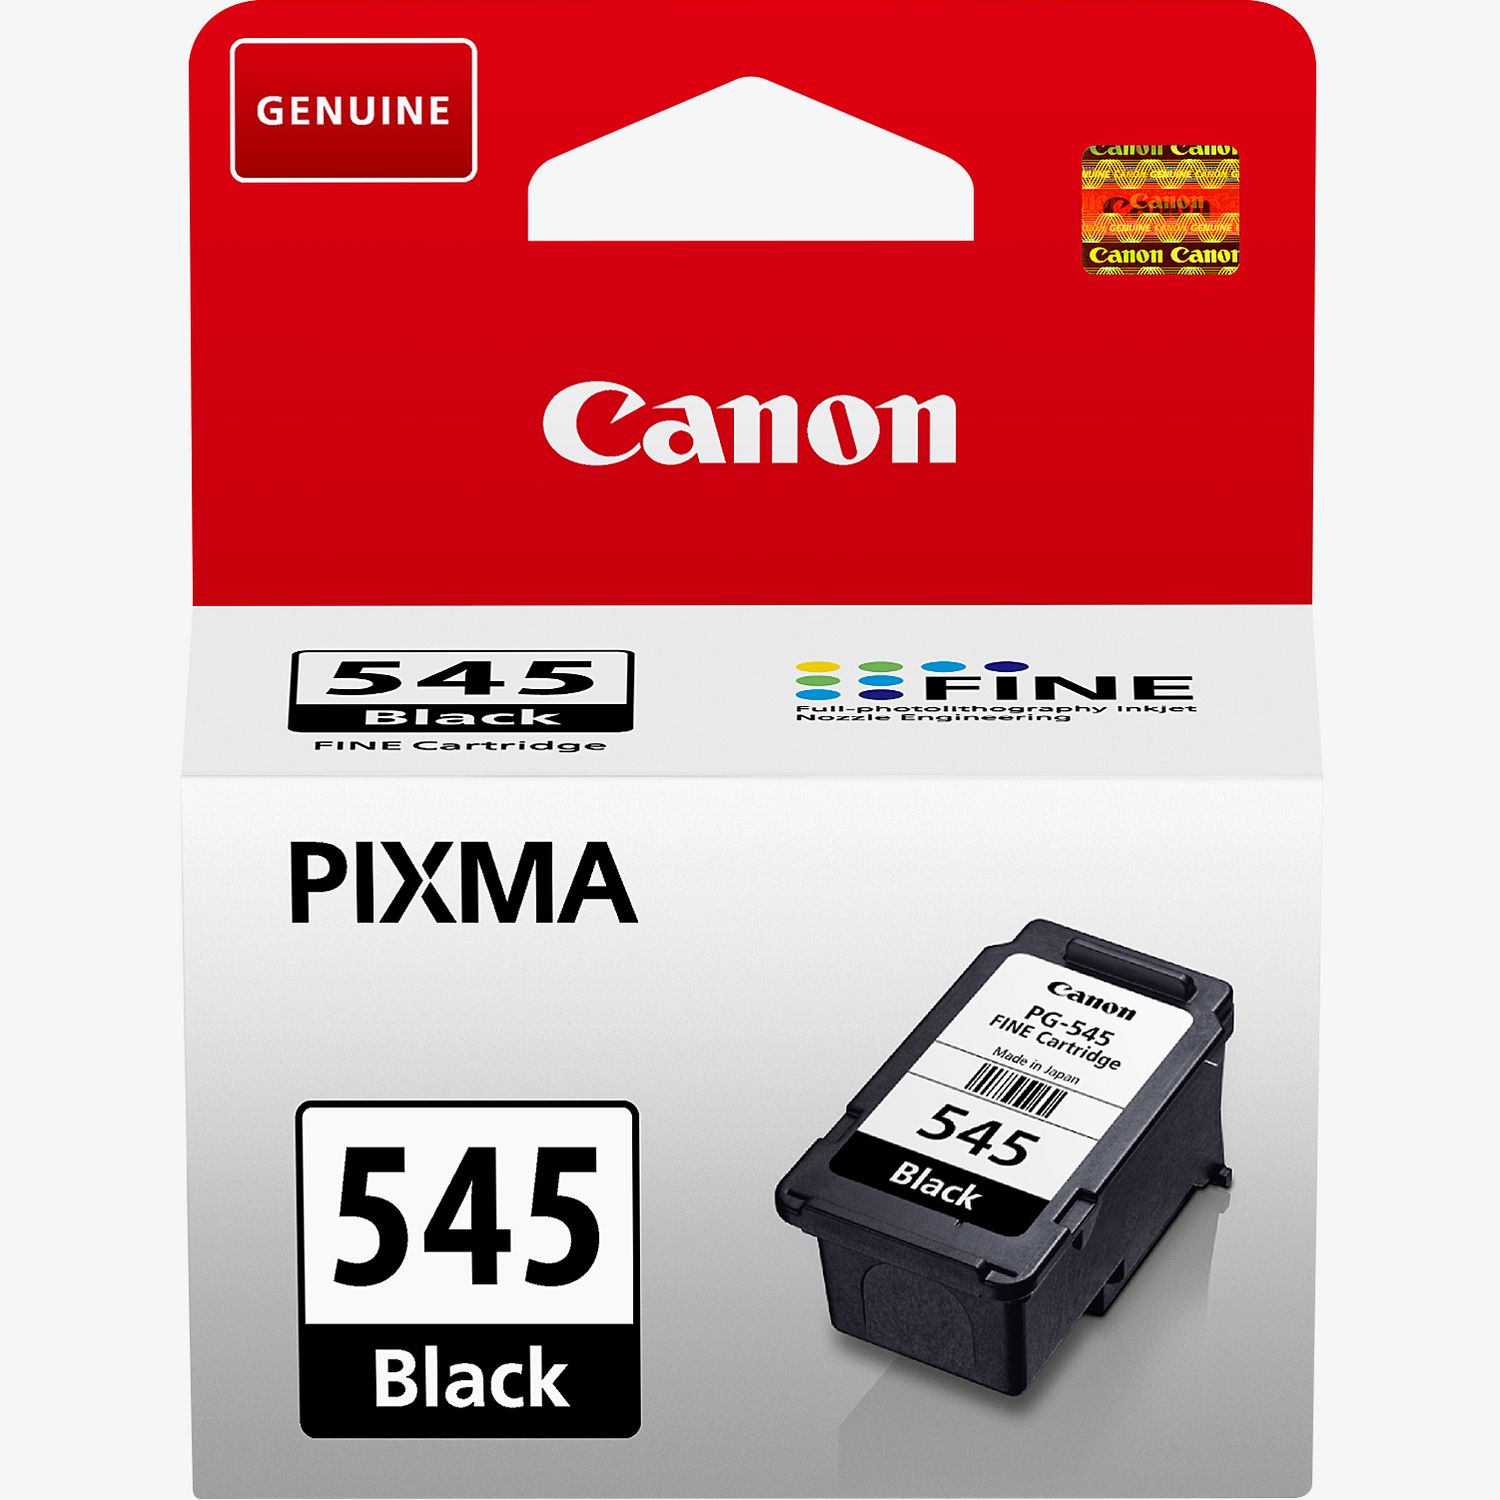 Canon PIXMA TS3350 Multifunction Wifi Printer - Black : :  Computers & Accessories